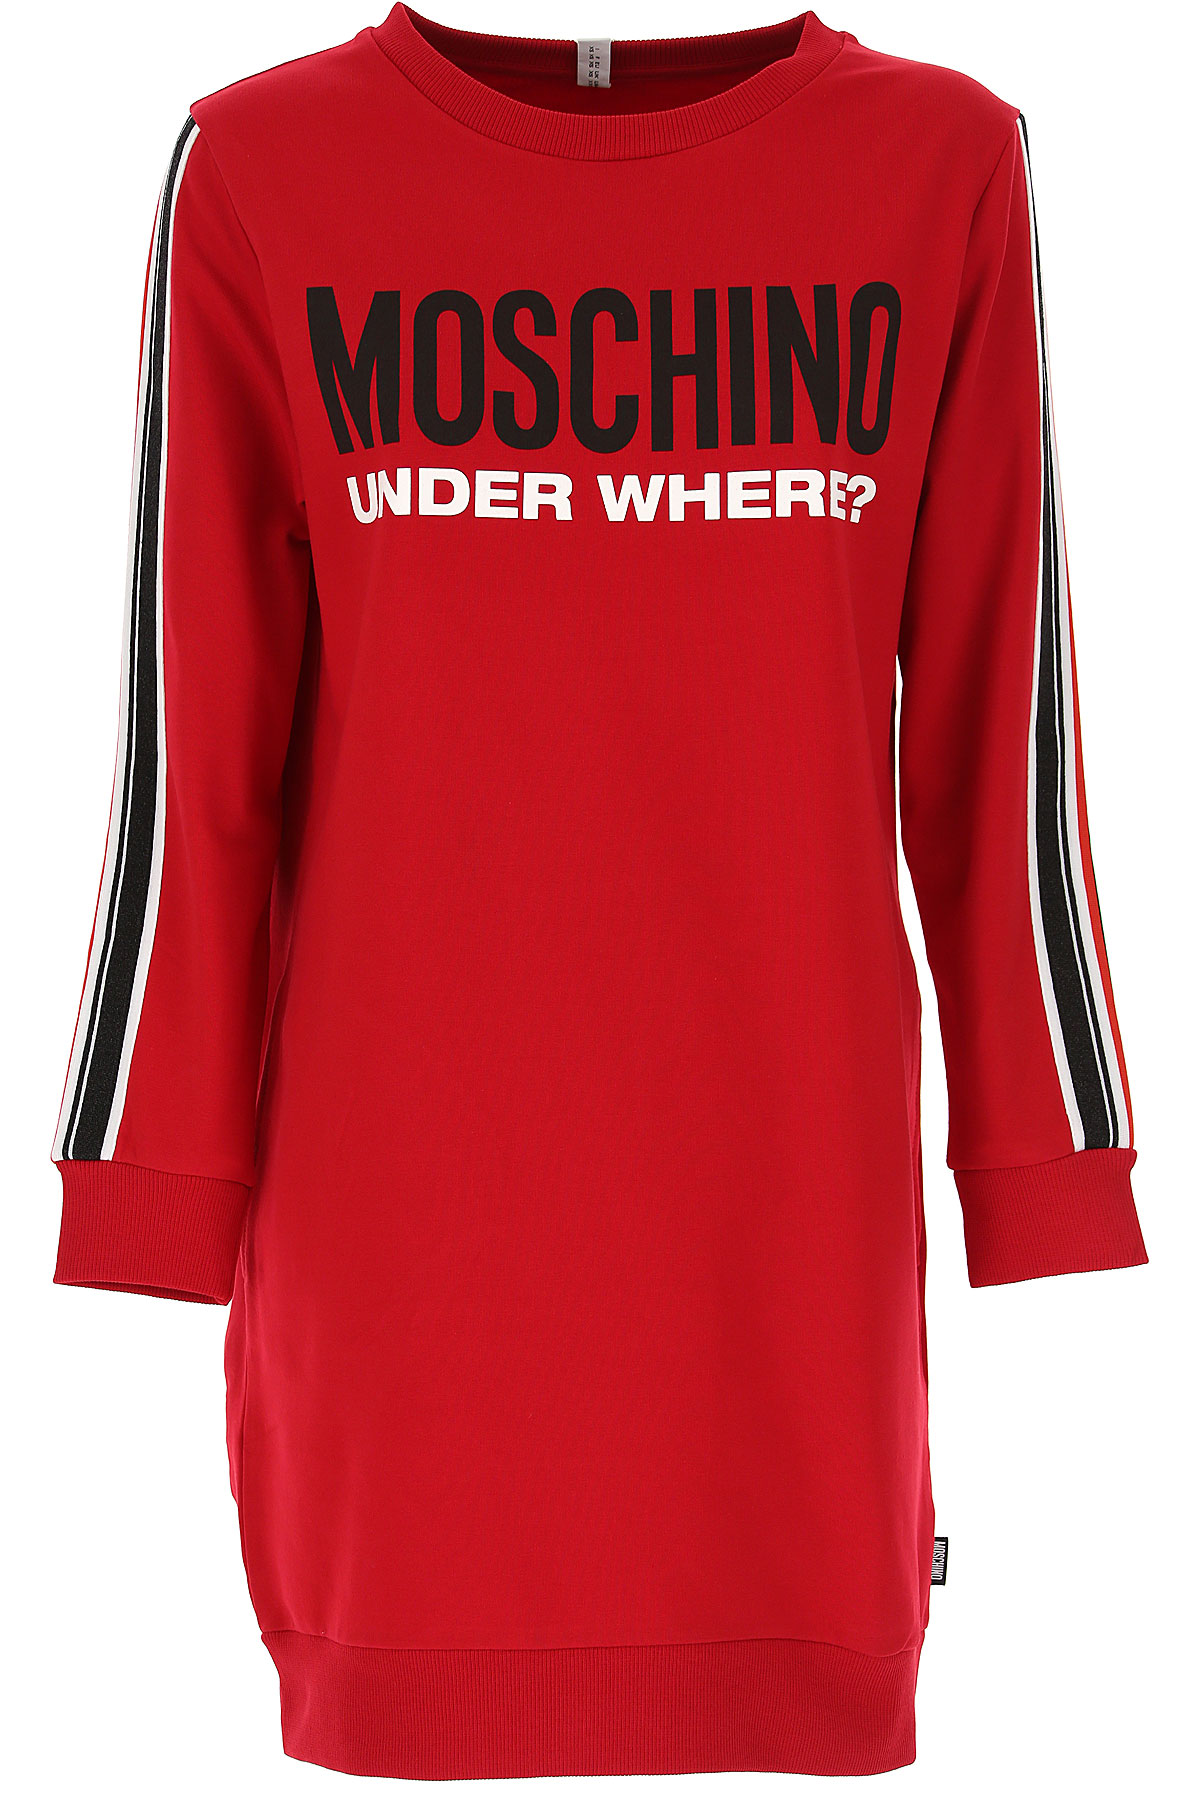 Moschino Sweatshirt für Damen, Kapuzenpulli, Hoodie, Sweats Günstig im Sale, Rot, Baumwolle, 2017, 40 44 M